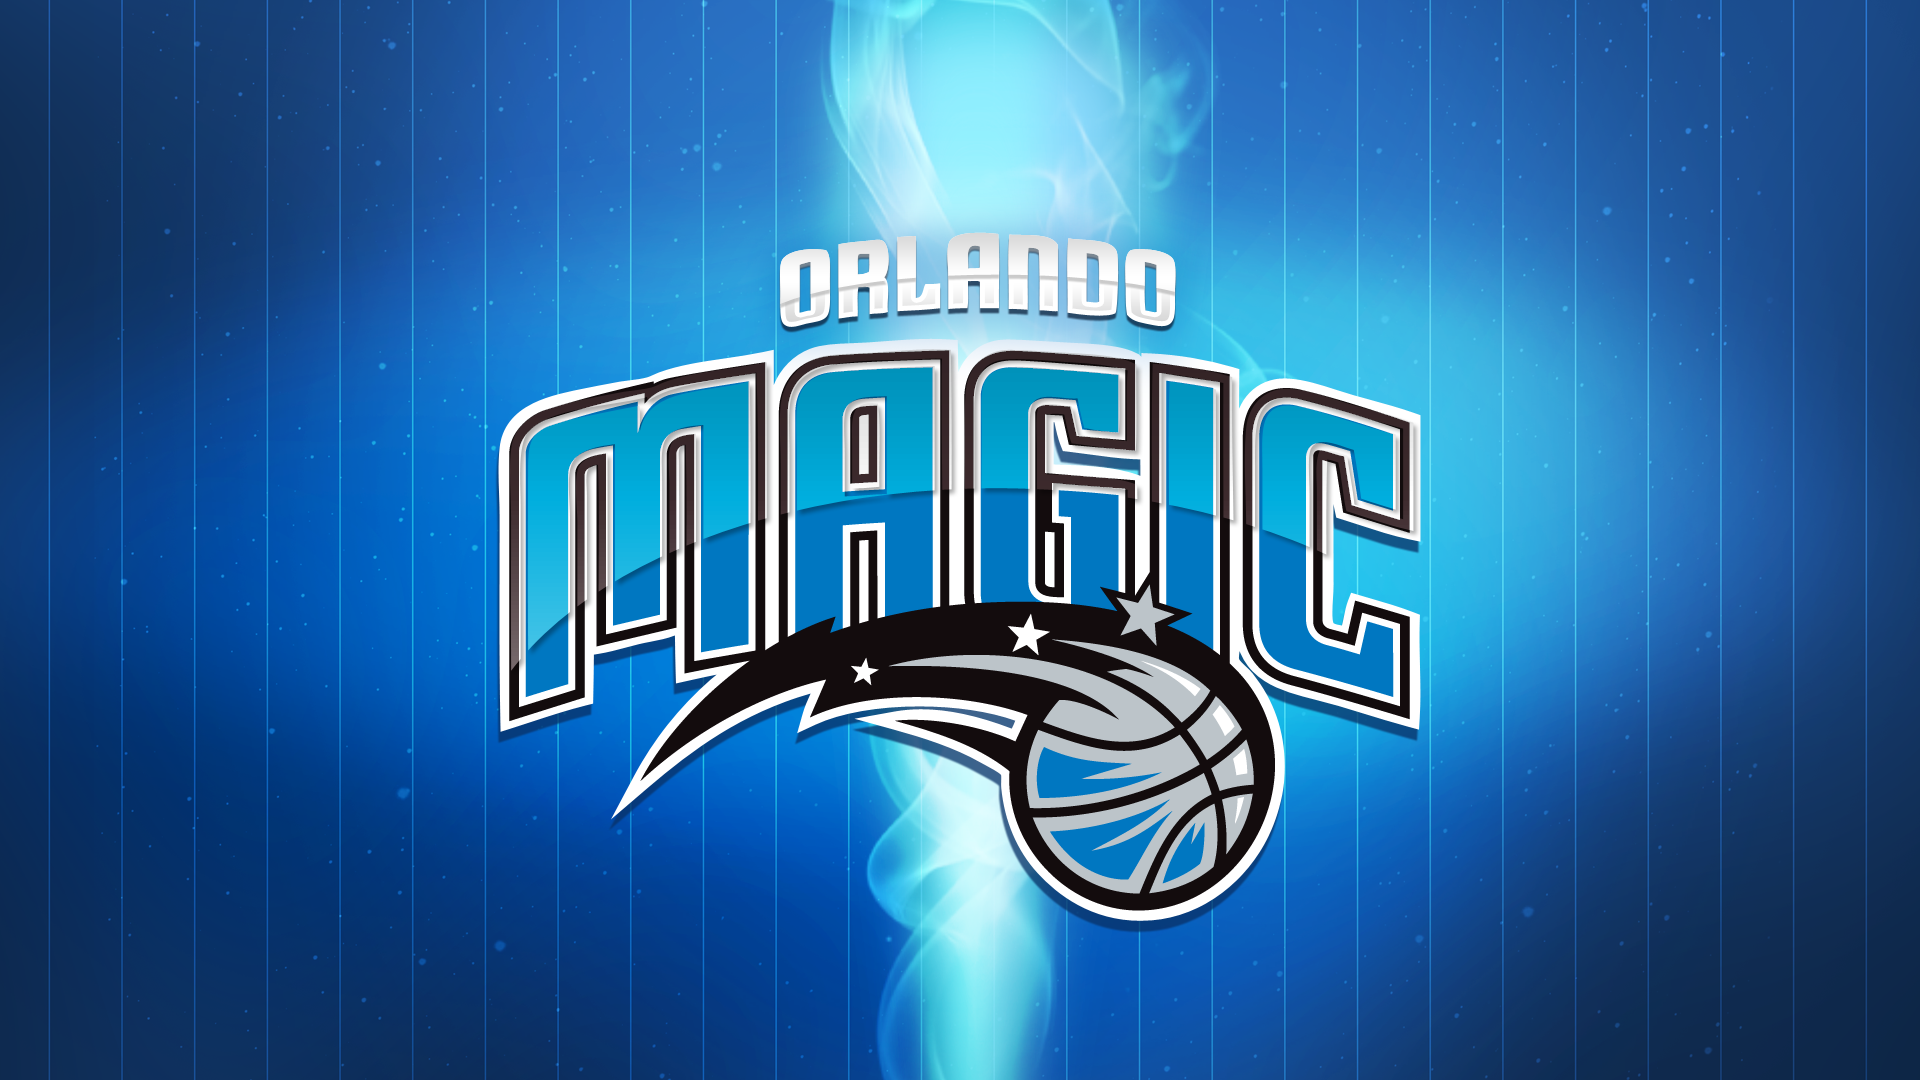 ORLANDO MAGIC nba basketball wallpaper | 1920x1080 | 227839 ...